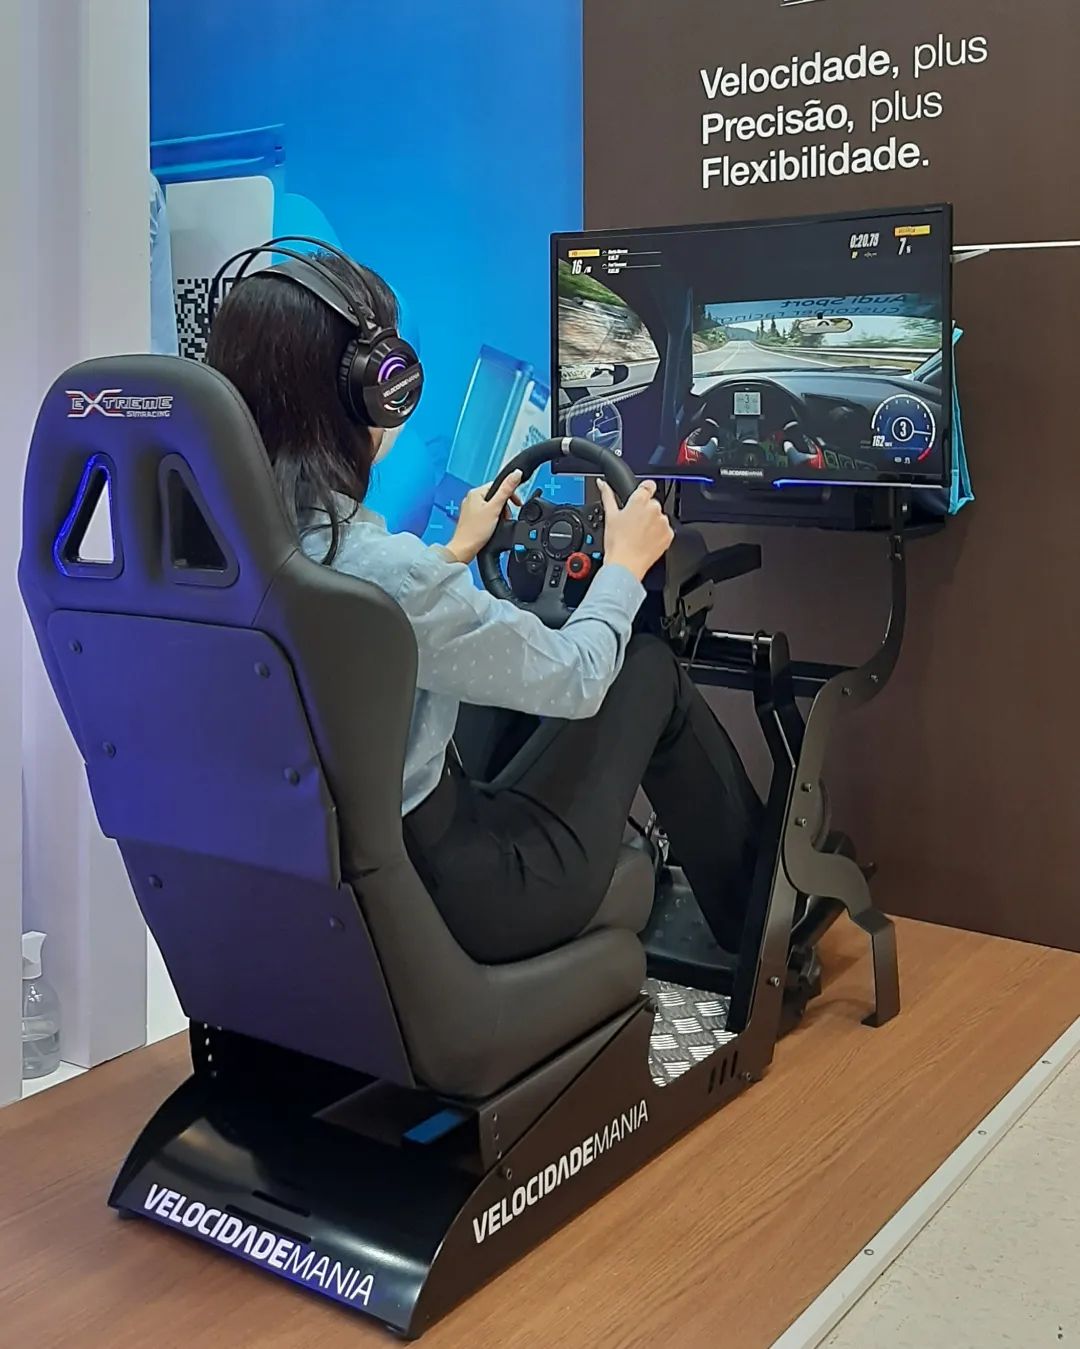 Como funciona um simulador de corrida de carros?